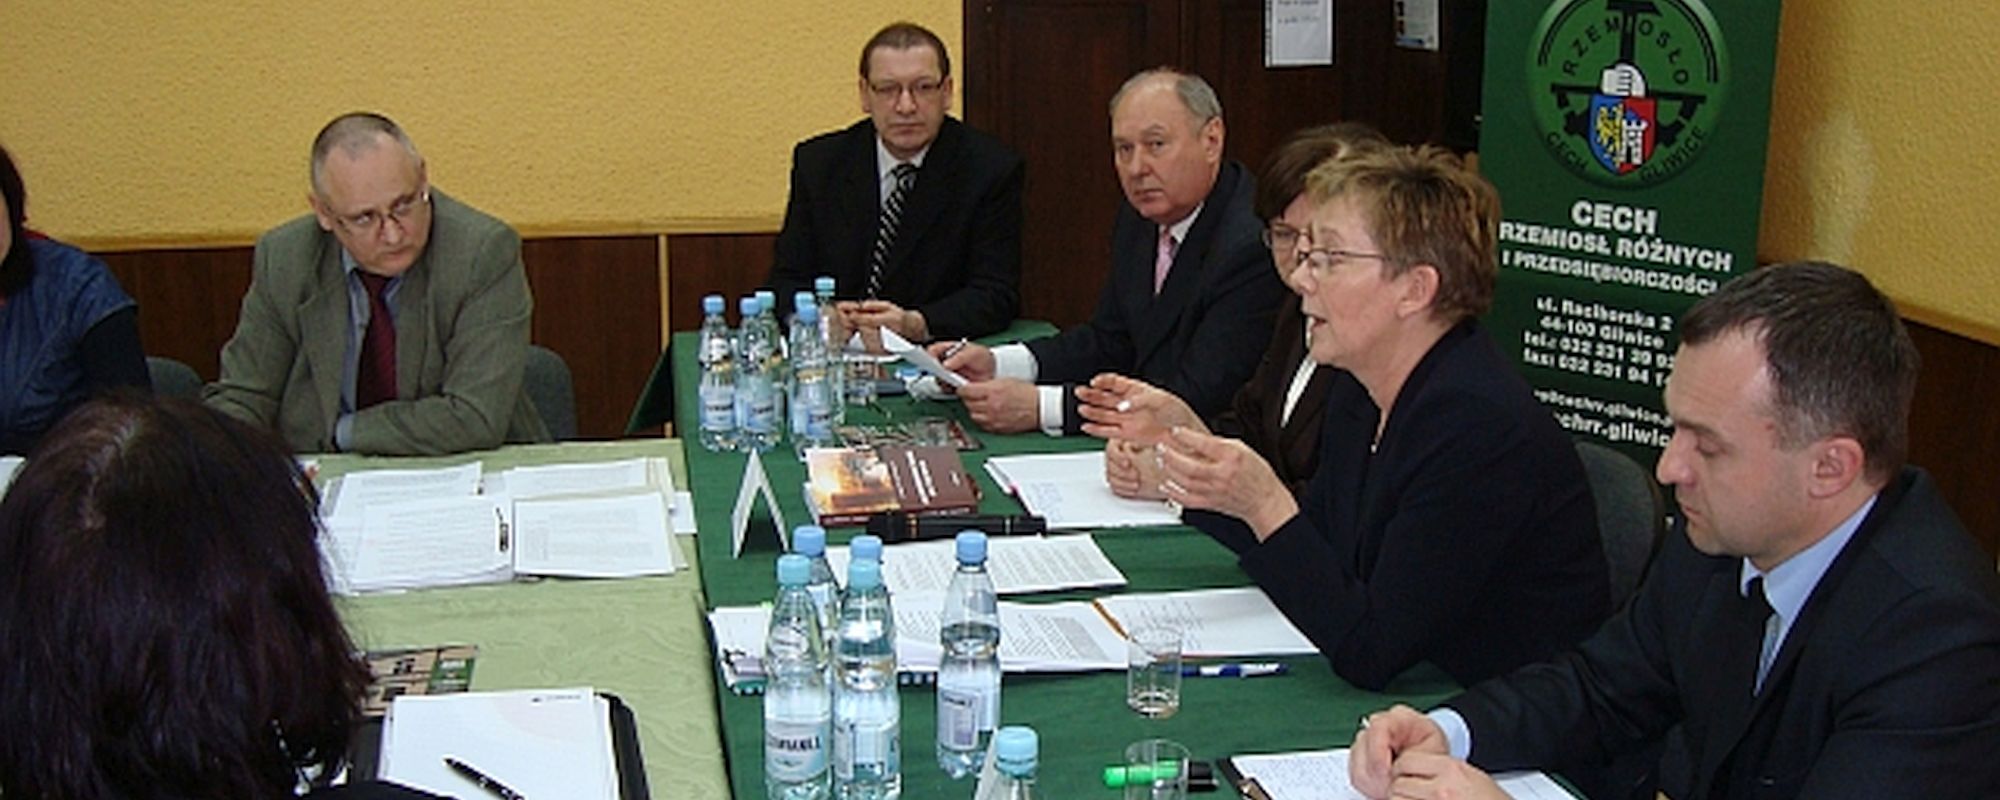 Spotkanie z minister Szumilas